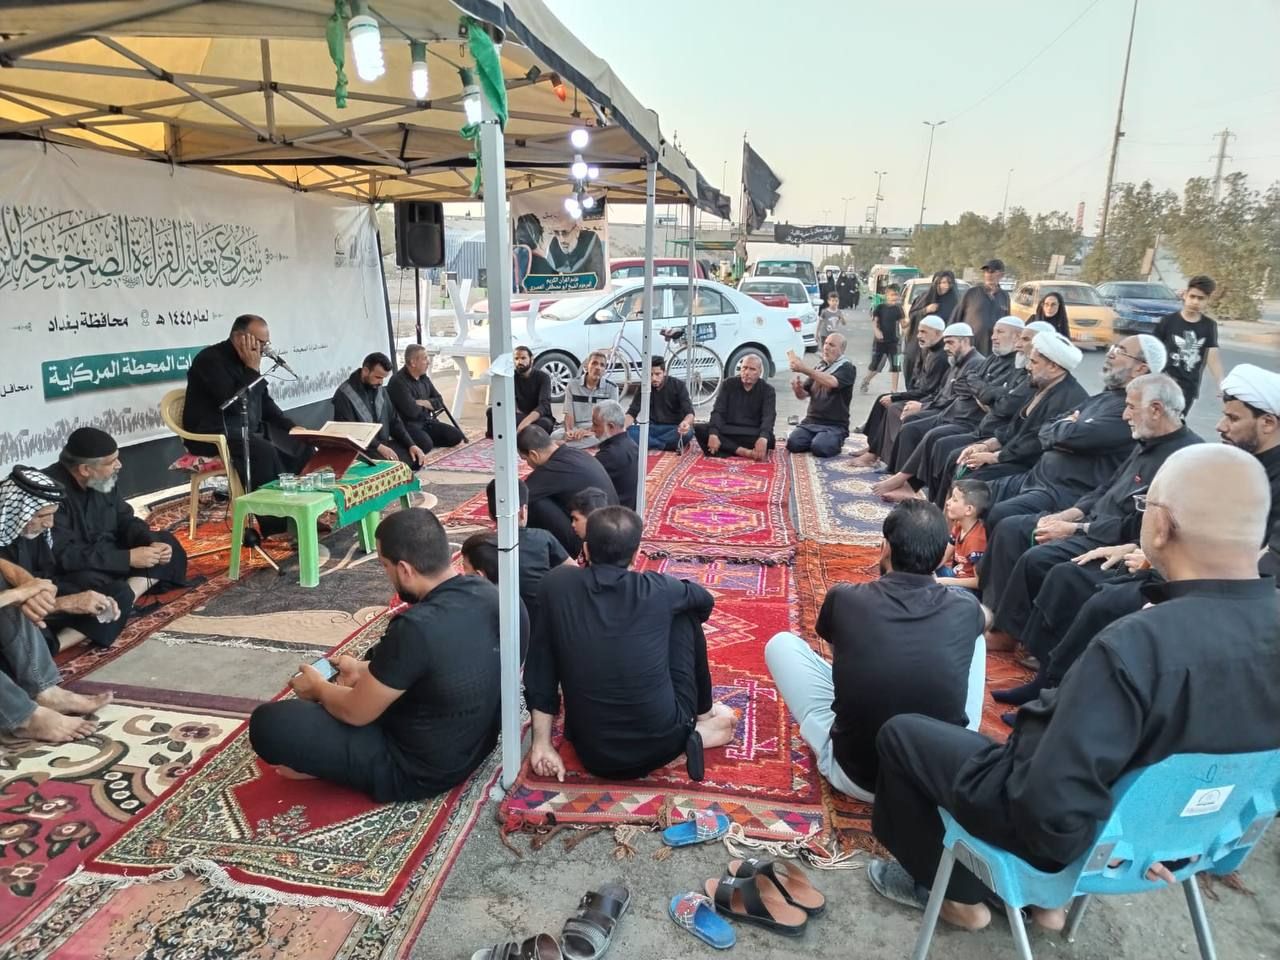 المَجمَع العلميّ يقيم محفلاً قرآنياً في قضاء الحسينية ببغداد